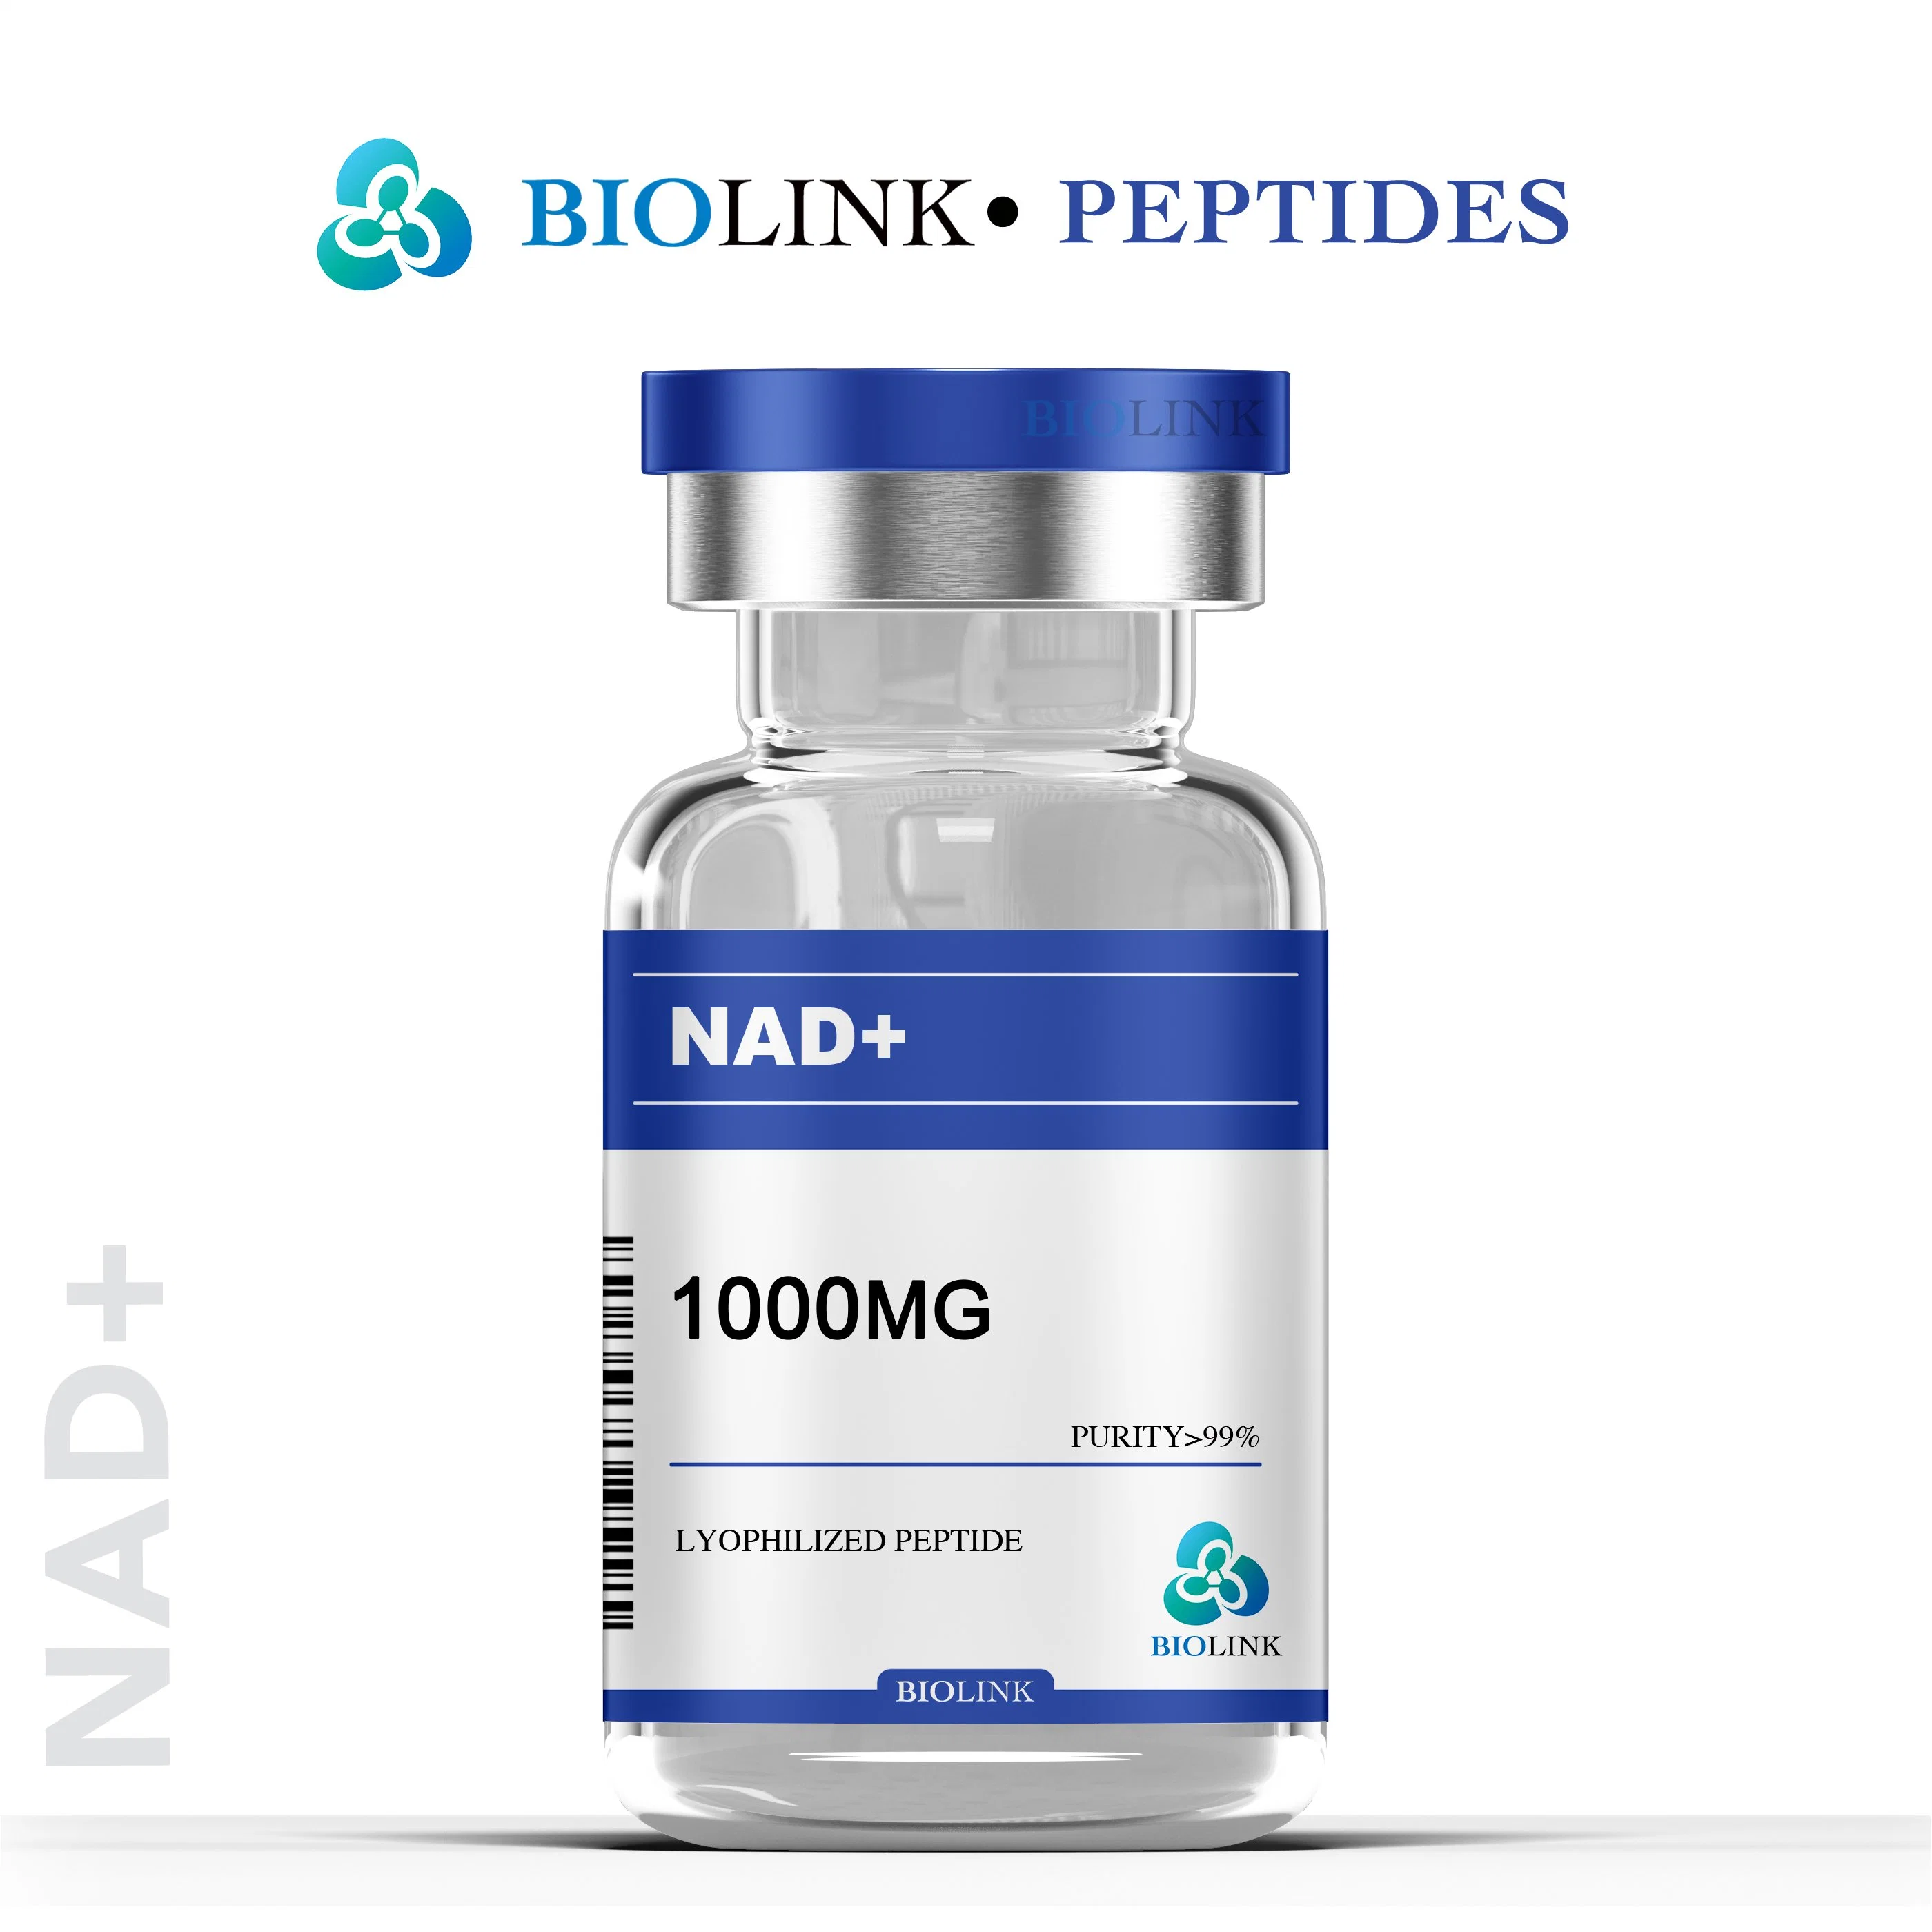 500 ملغ/زجاجات دواء مع المريء الطبى المنجمي (Nad+) الأيض في علاج السرطان الولايات المتحدة الأمريكية (USA Stock CAS): 53-84-9